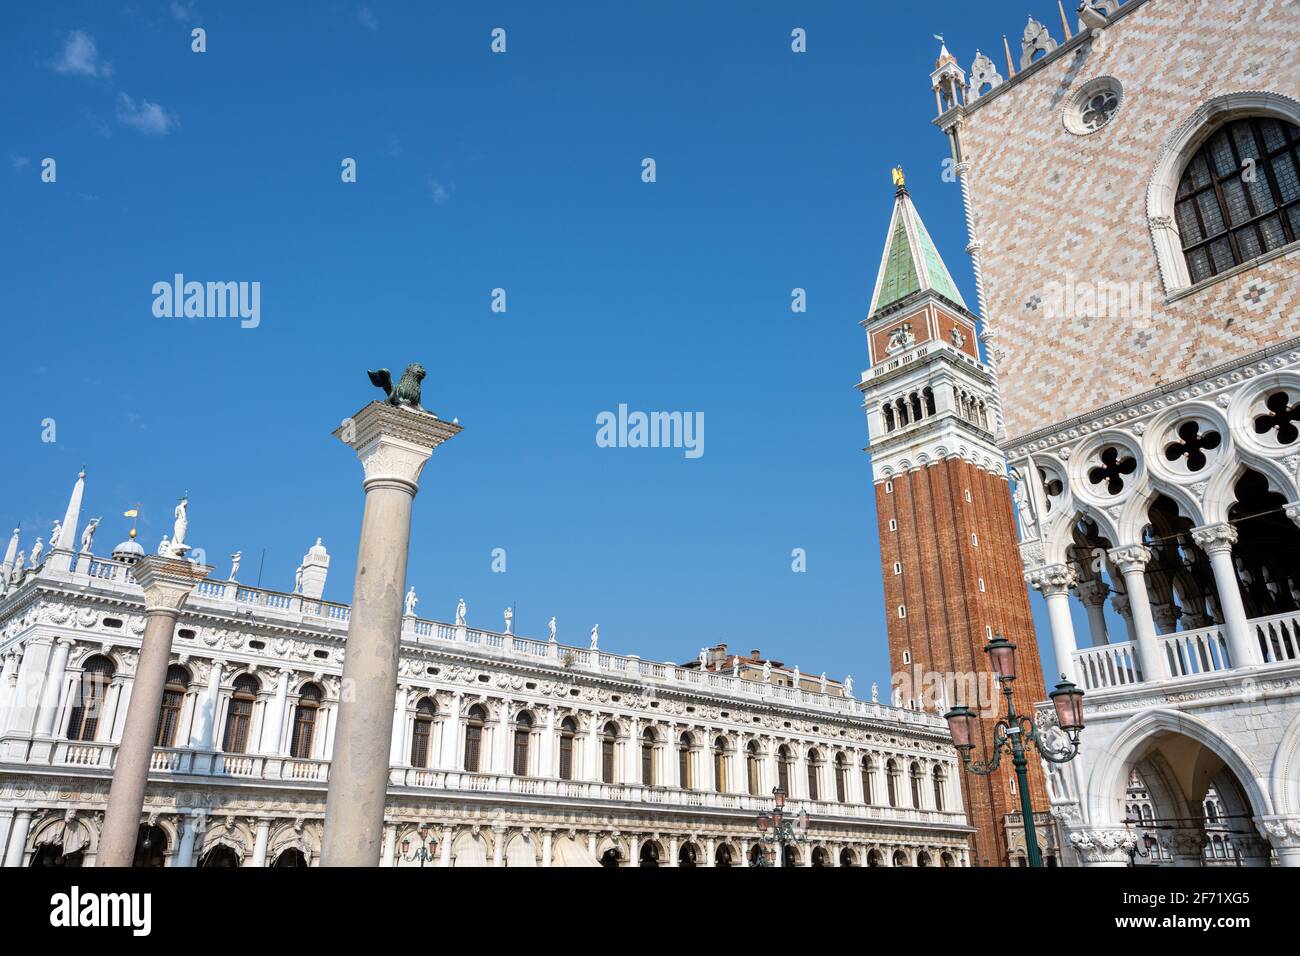 Parte del famoso Palacio Doges con el Campanile y la biblioteca Marciana, vista en Venecia, Italia Foto de stock